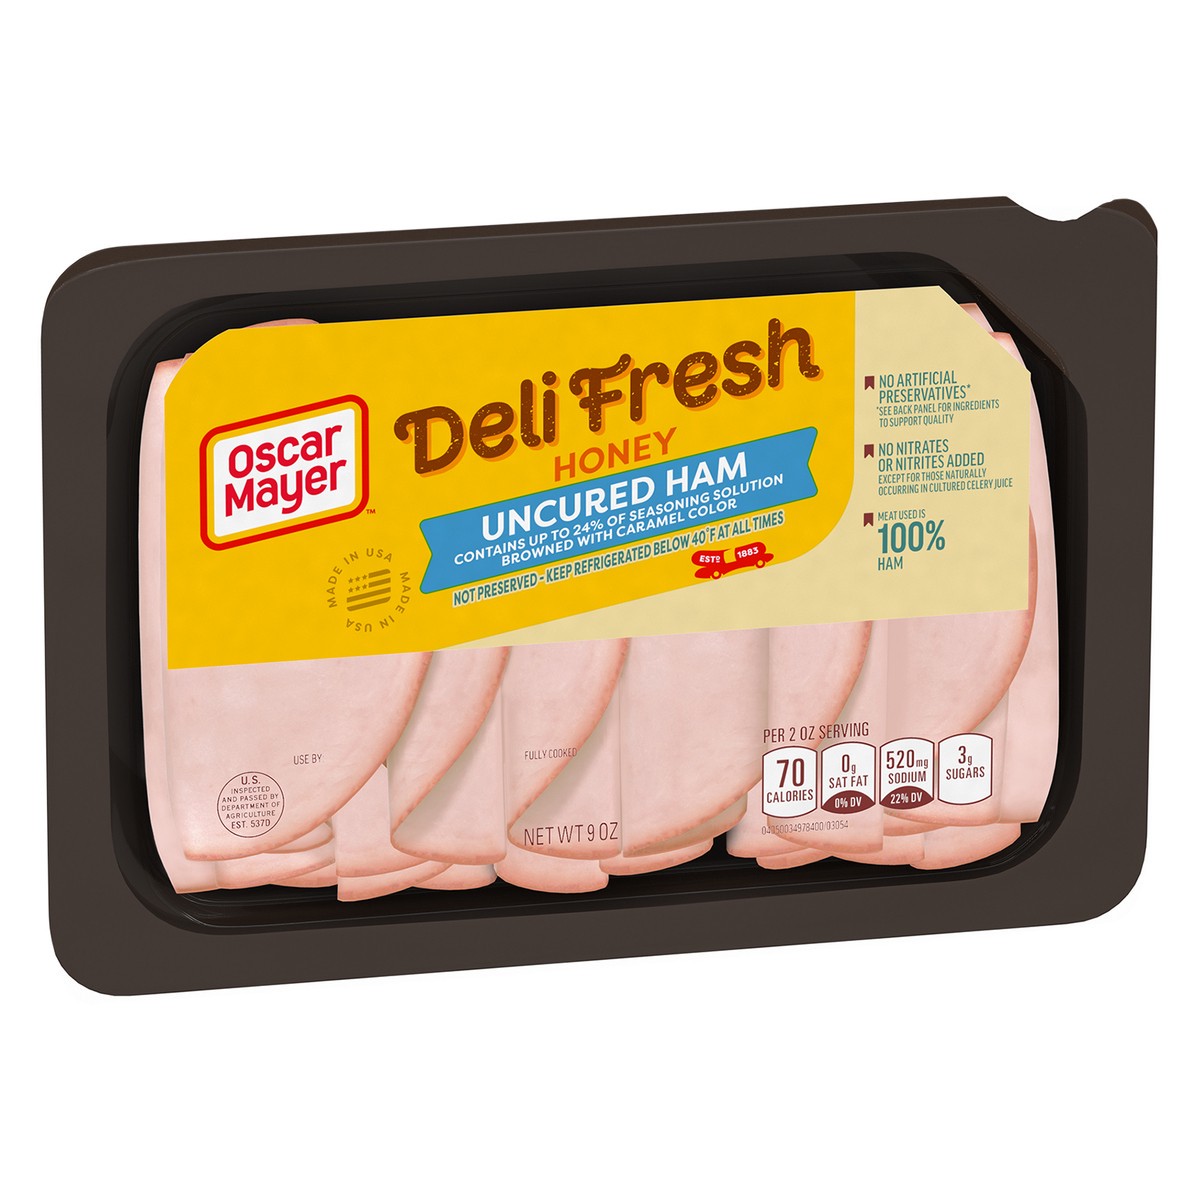 slide 6 of 9, Oscar Mayer Deli Fresh Honey Uncured Sliced Ham Deli Lunch Meat, 9 oz Package, 9 oz